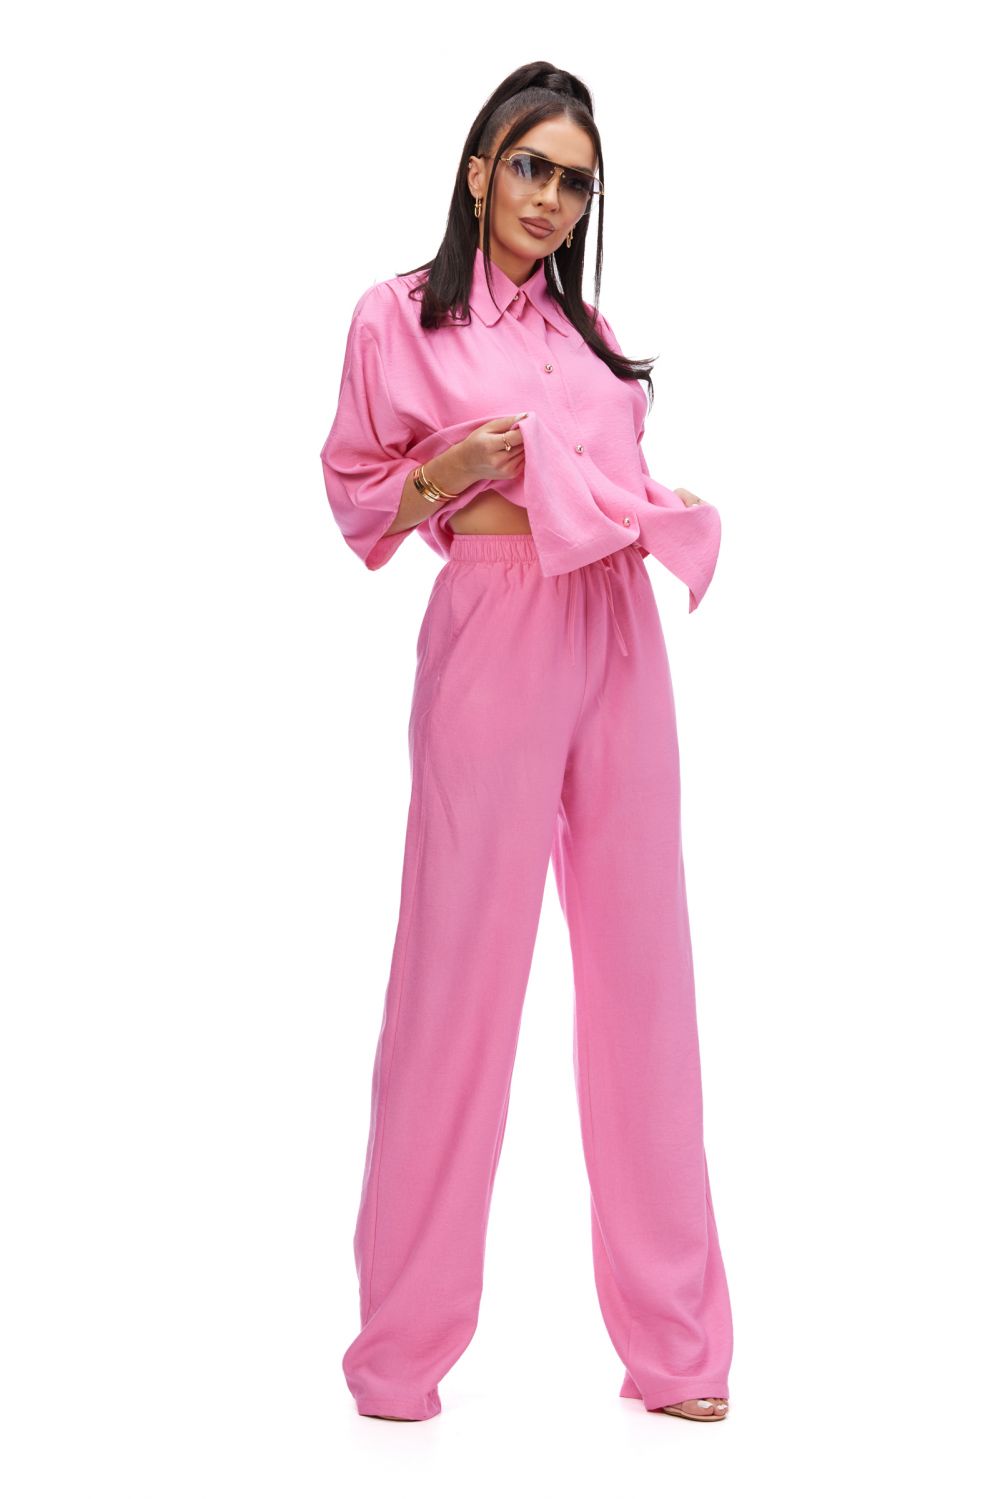 Sineky Bogas pink casual ladies suit